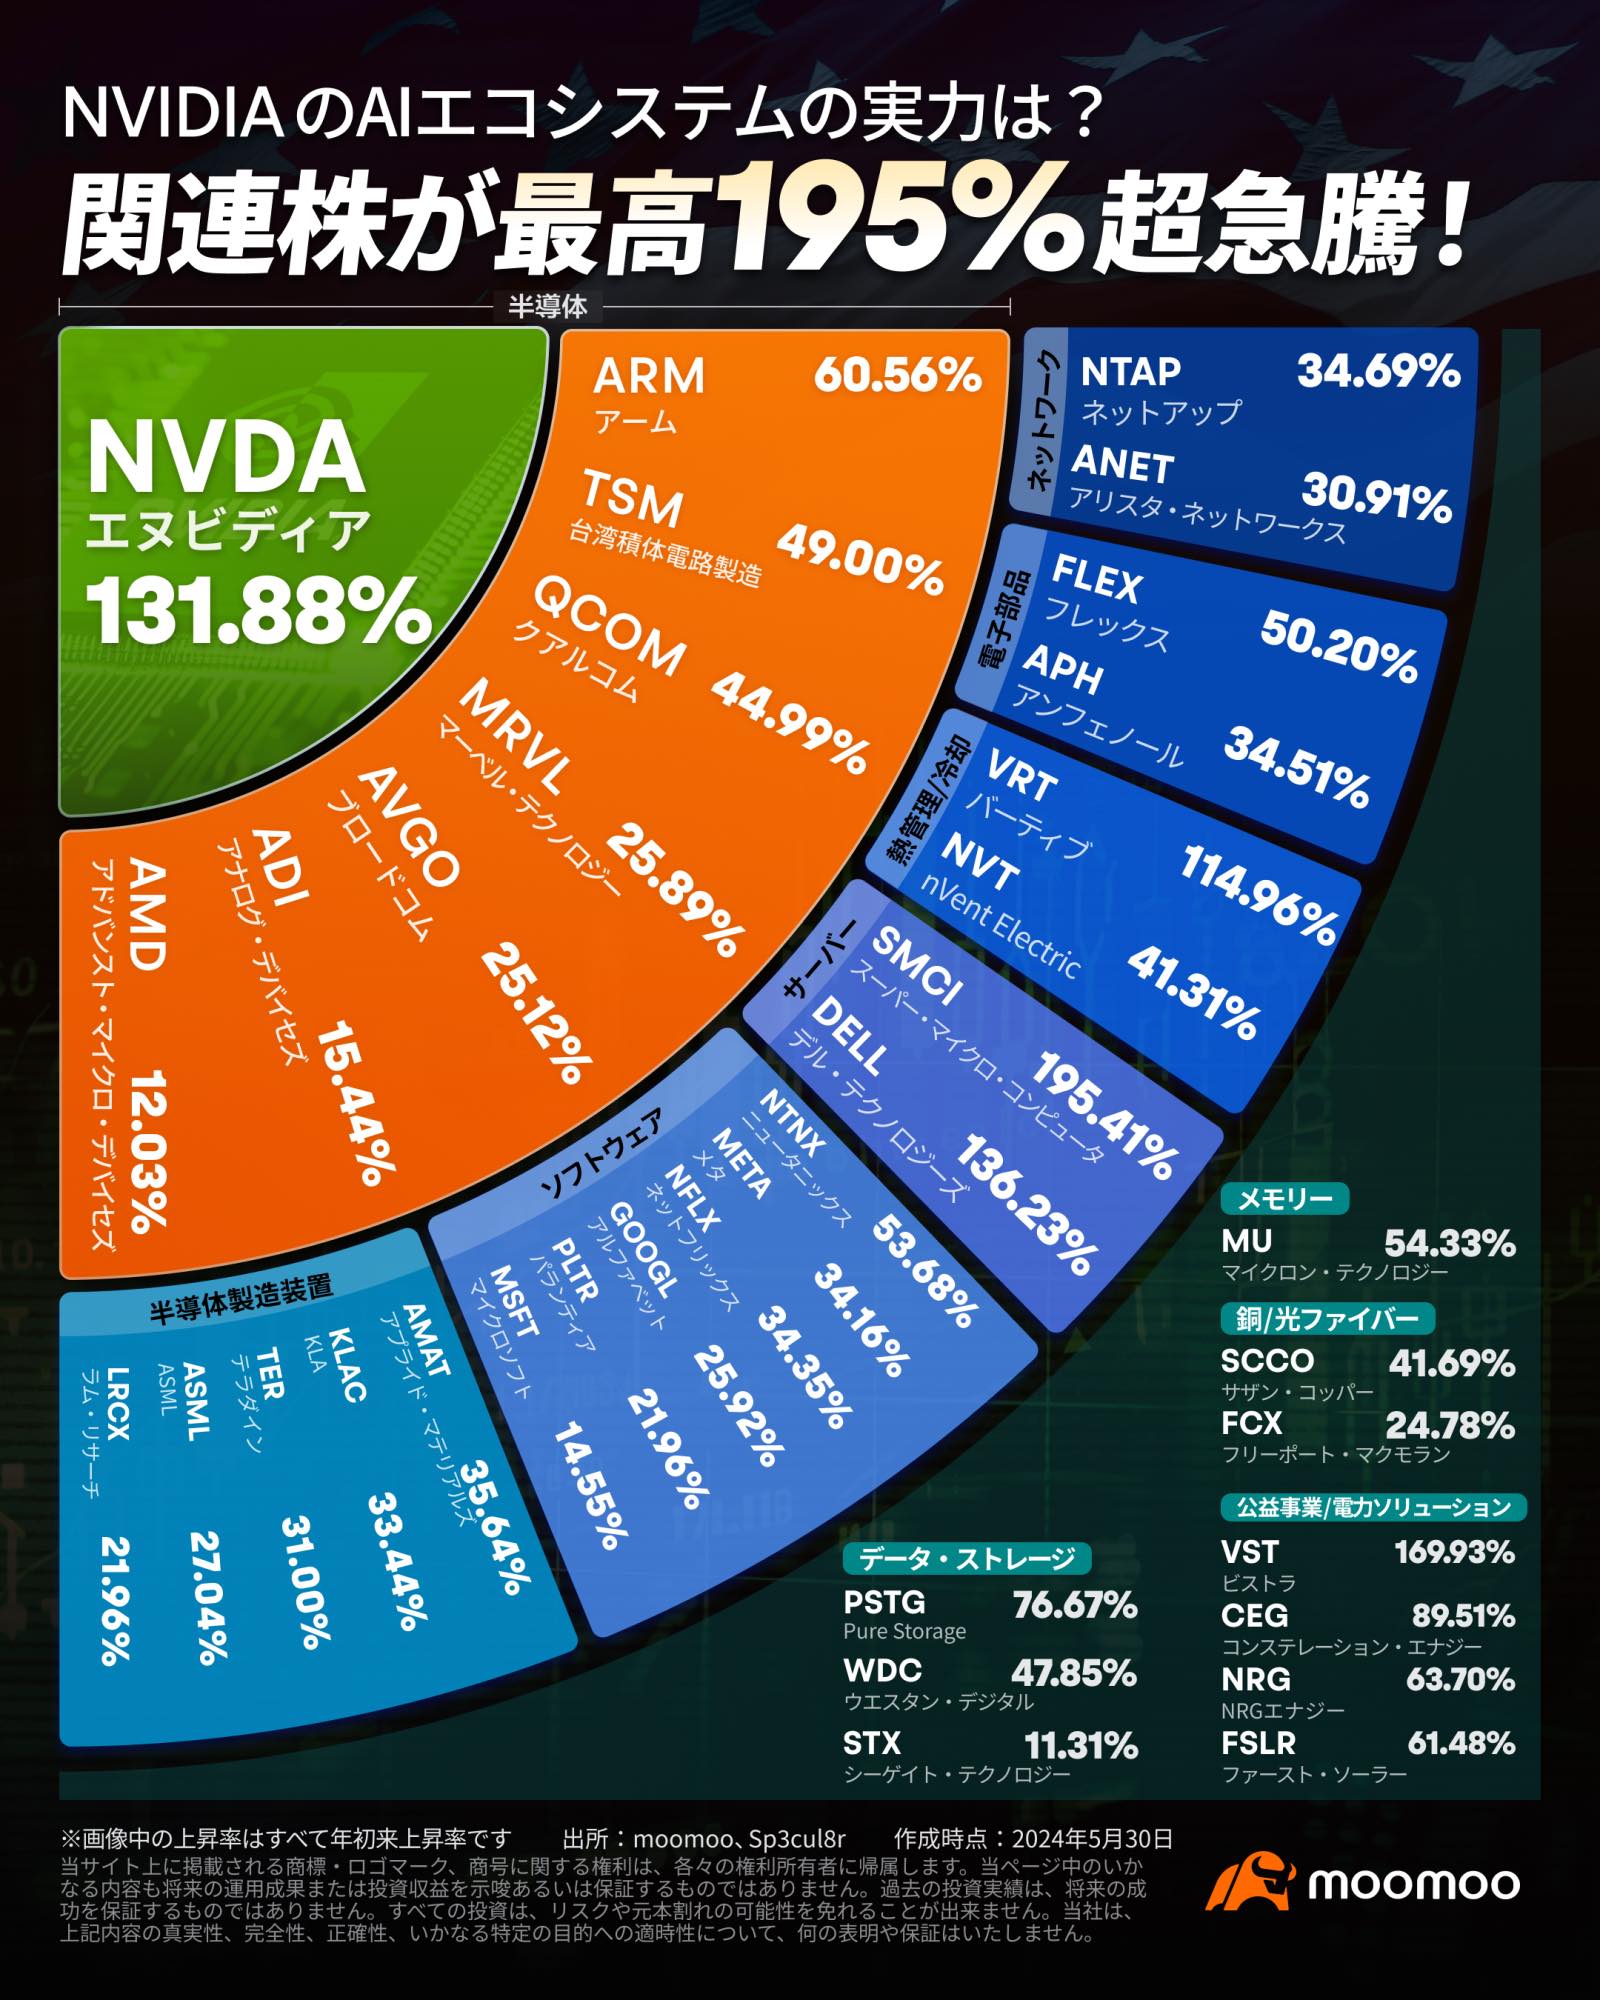 NVIDIA 相關股票正在迅速增長 ❣️